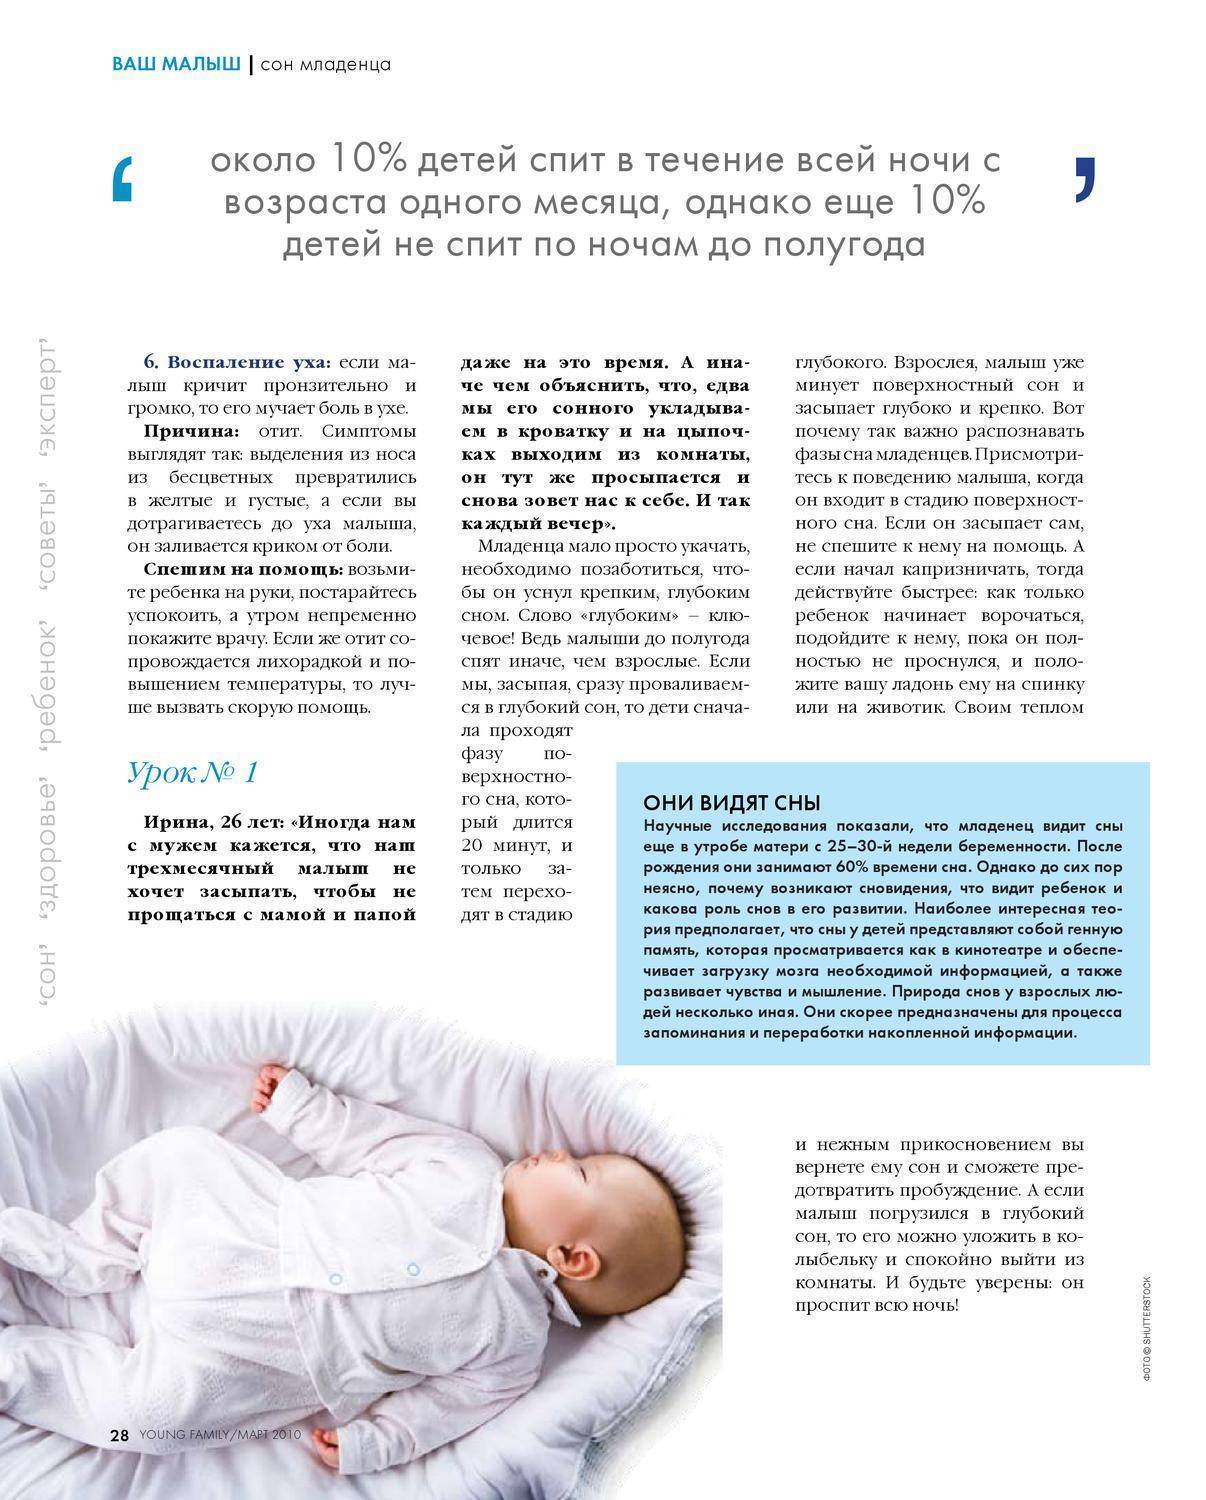 Как научить ребенка засыпать самостоятельно: пошаговая инструкция